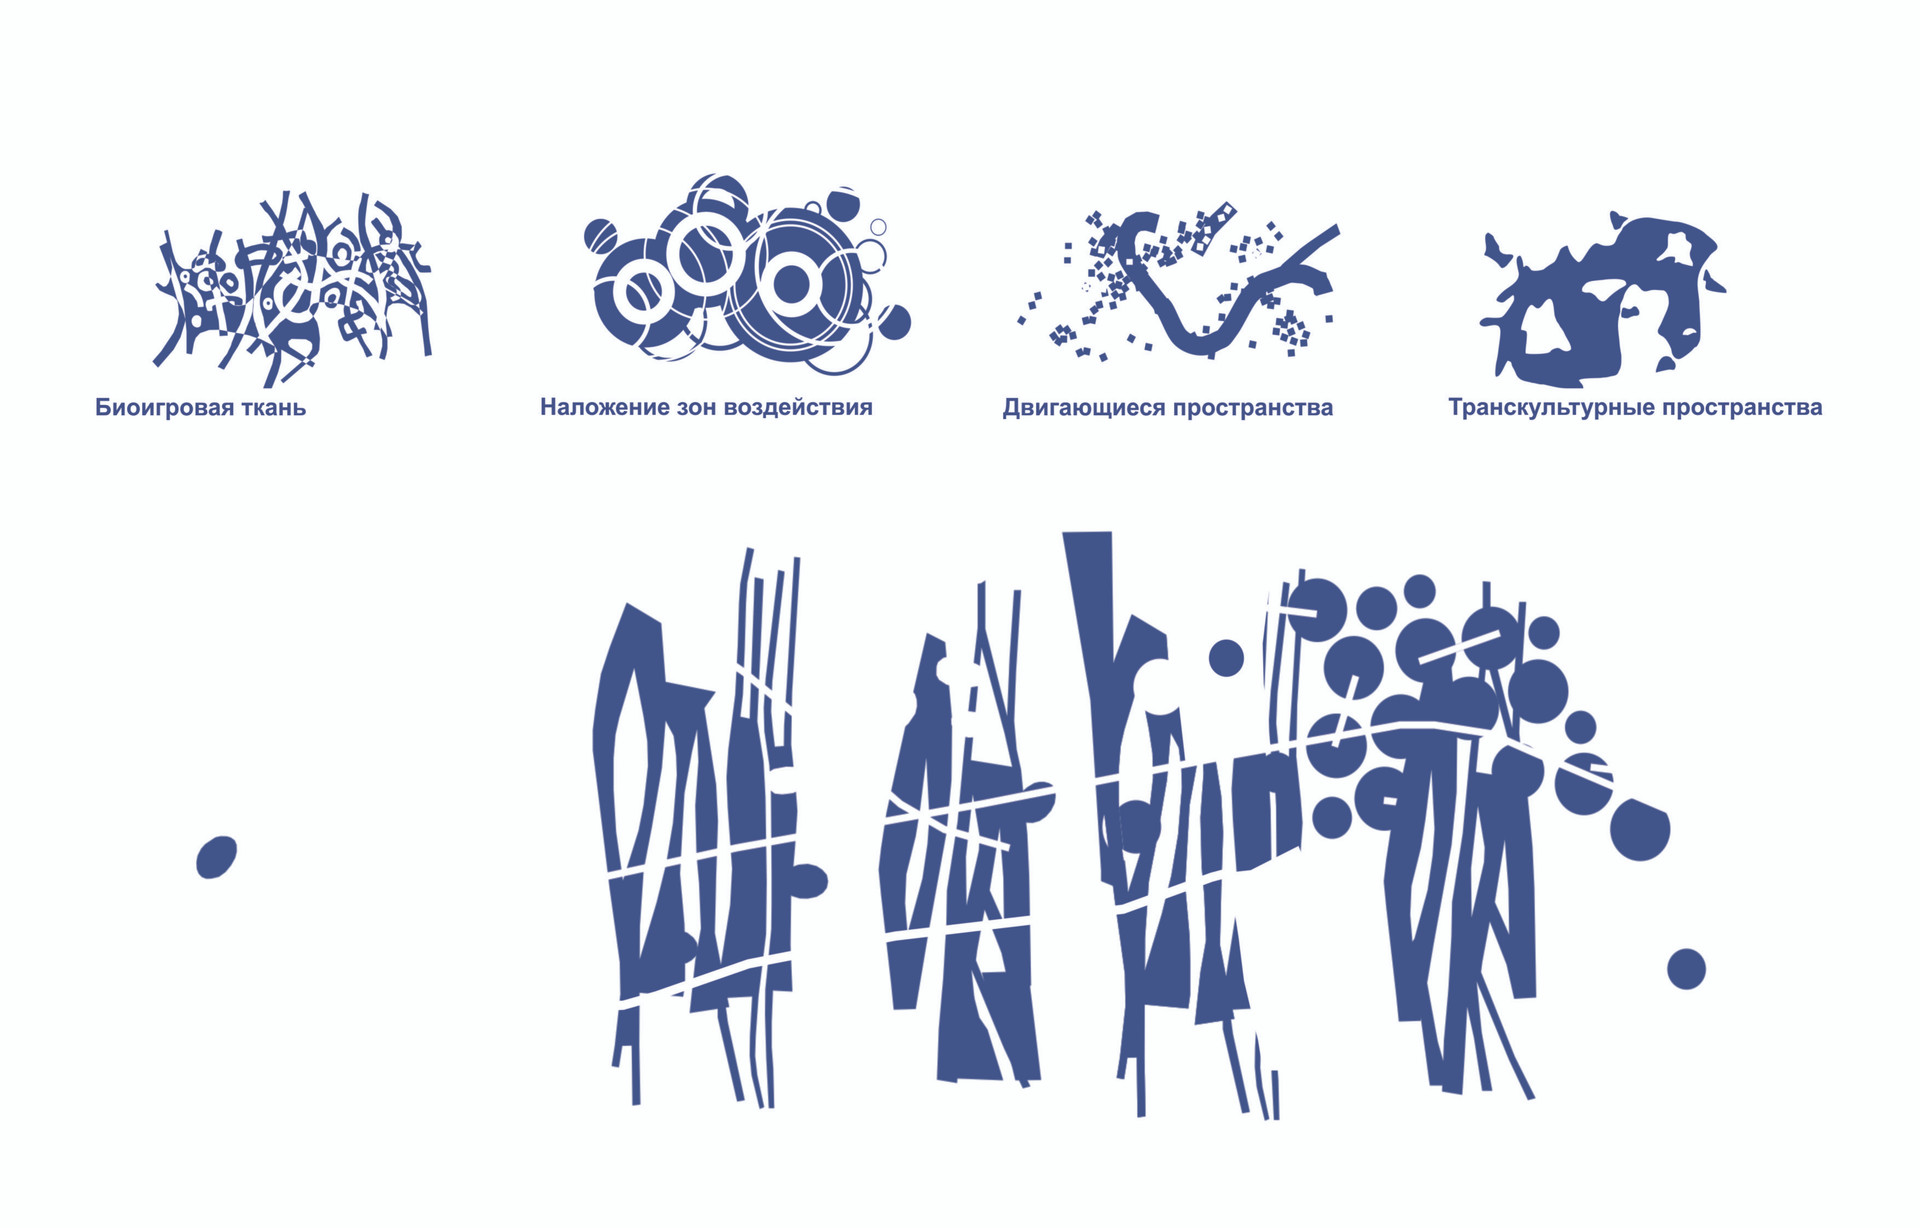 Рисунок 5. Биосоциальная ткань. Биомасса города. Самый подвижный элемент ткани играющего города (авторская иллюстрация).